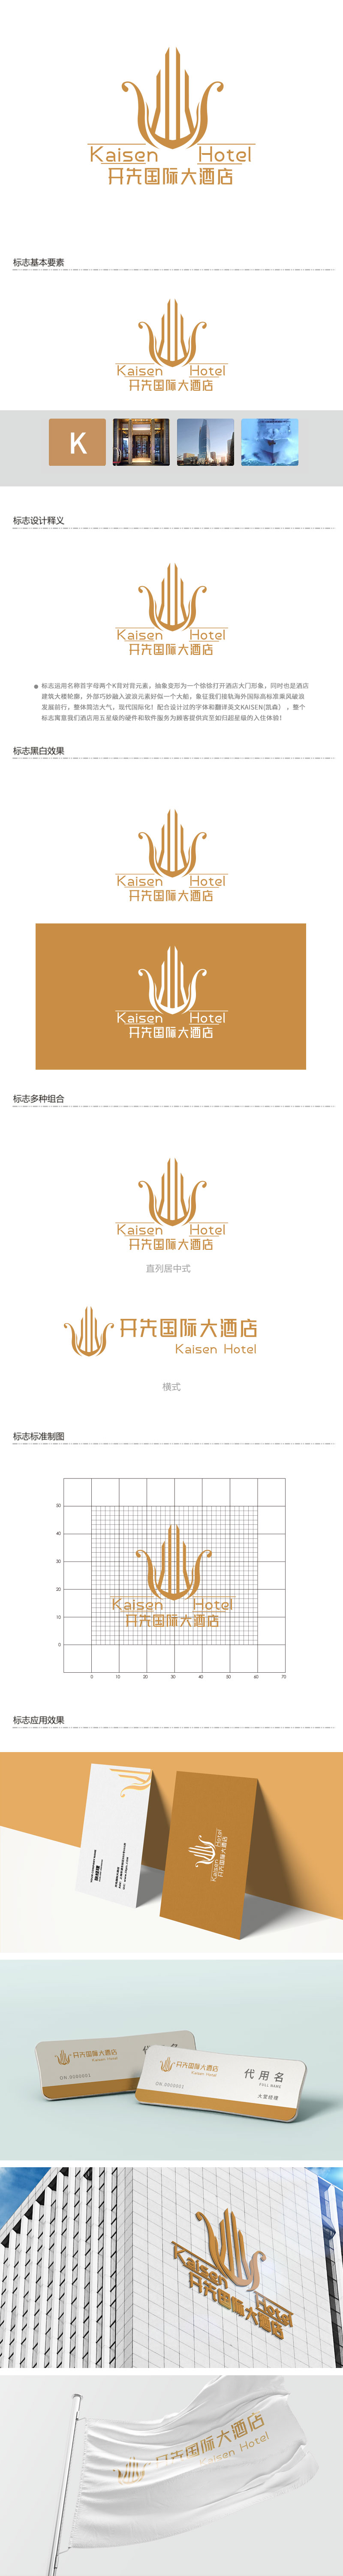 徐山的开先国际大酒店logo设计